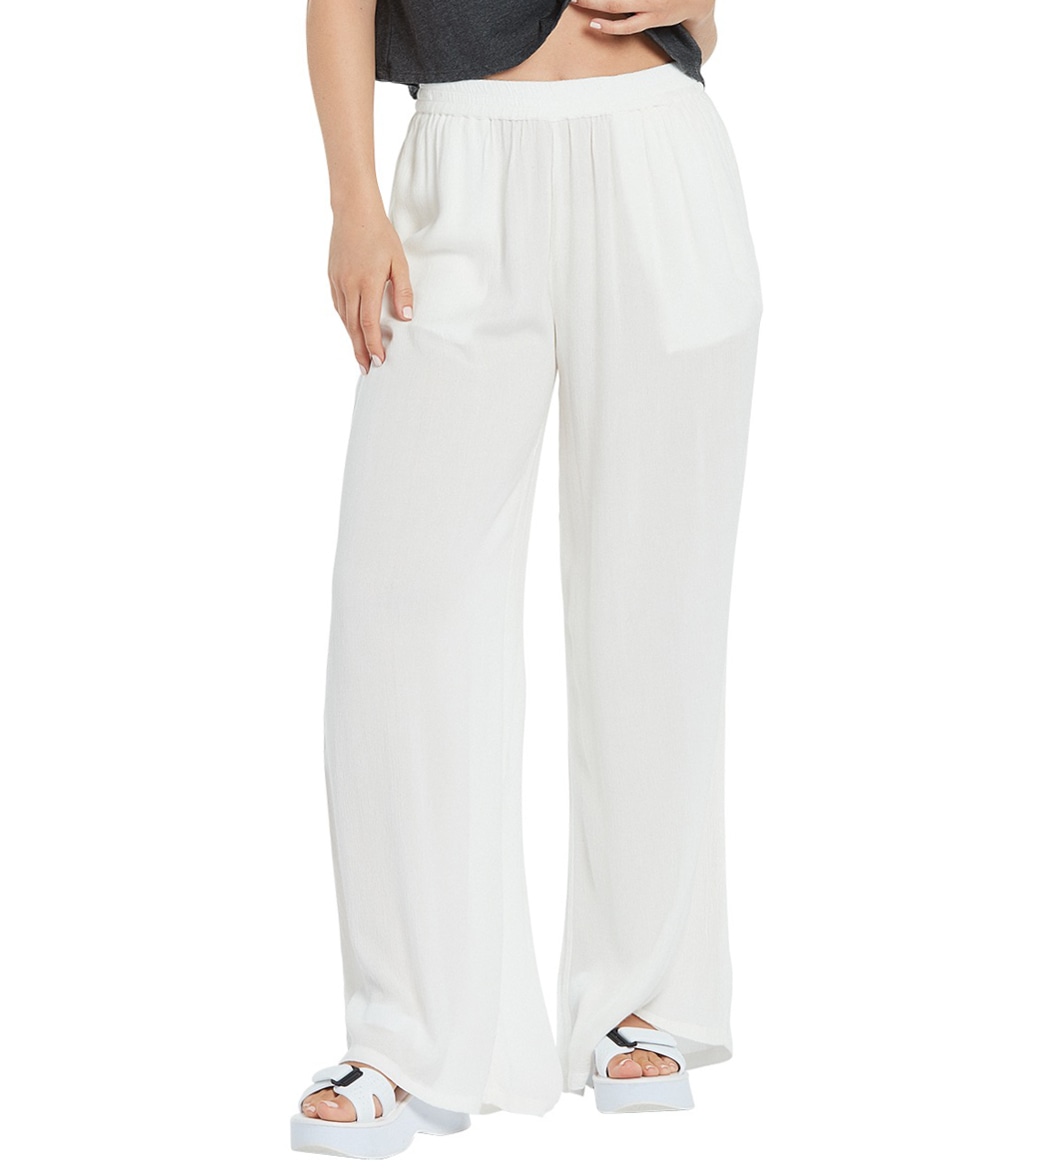 Volcom Women's Stoneshine Junki Pants - Star White Large - Swimoutlet.com